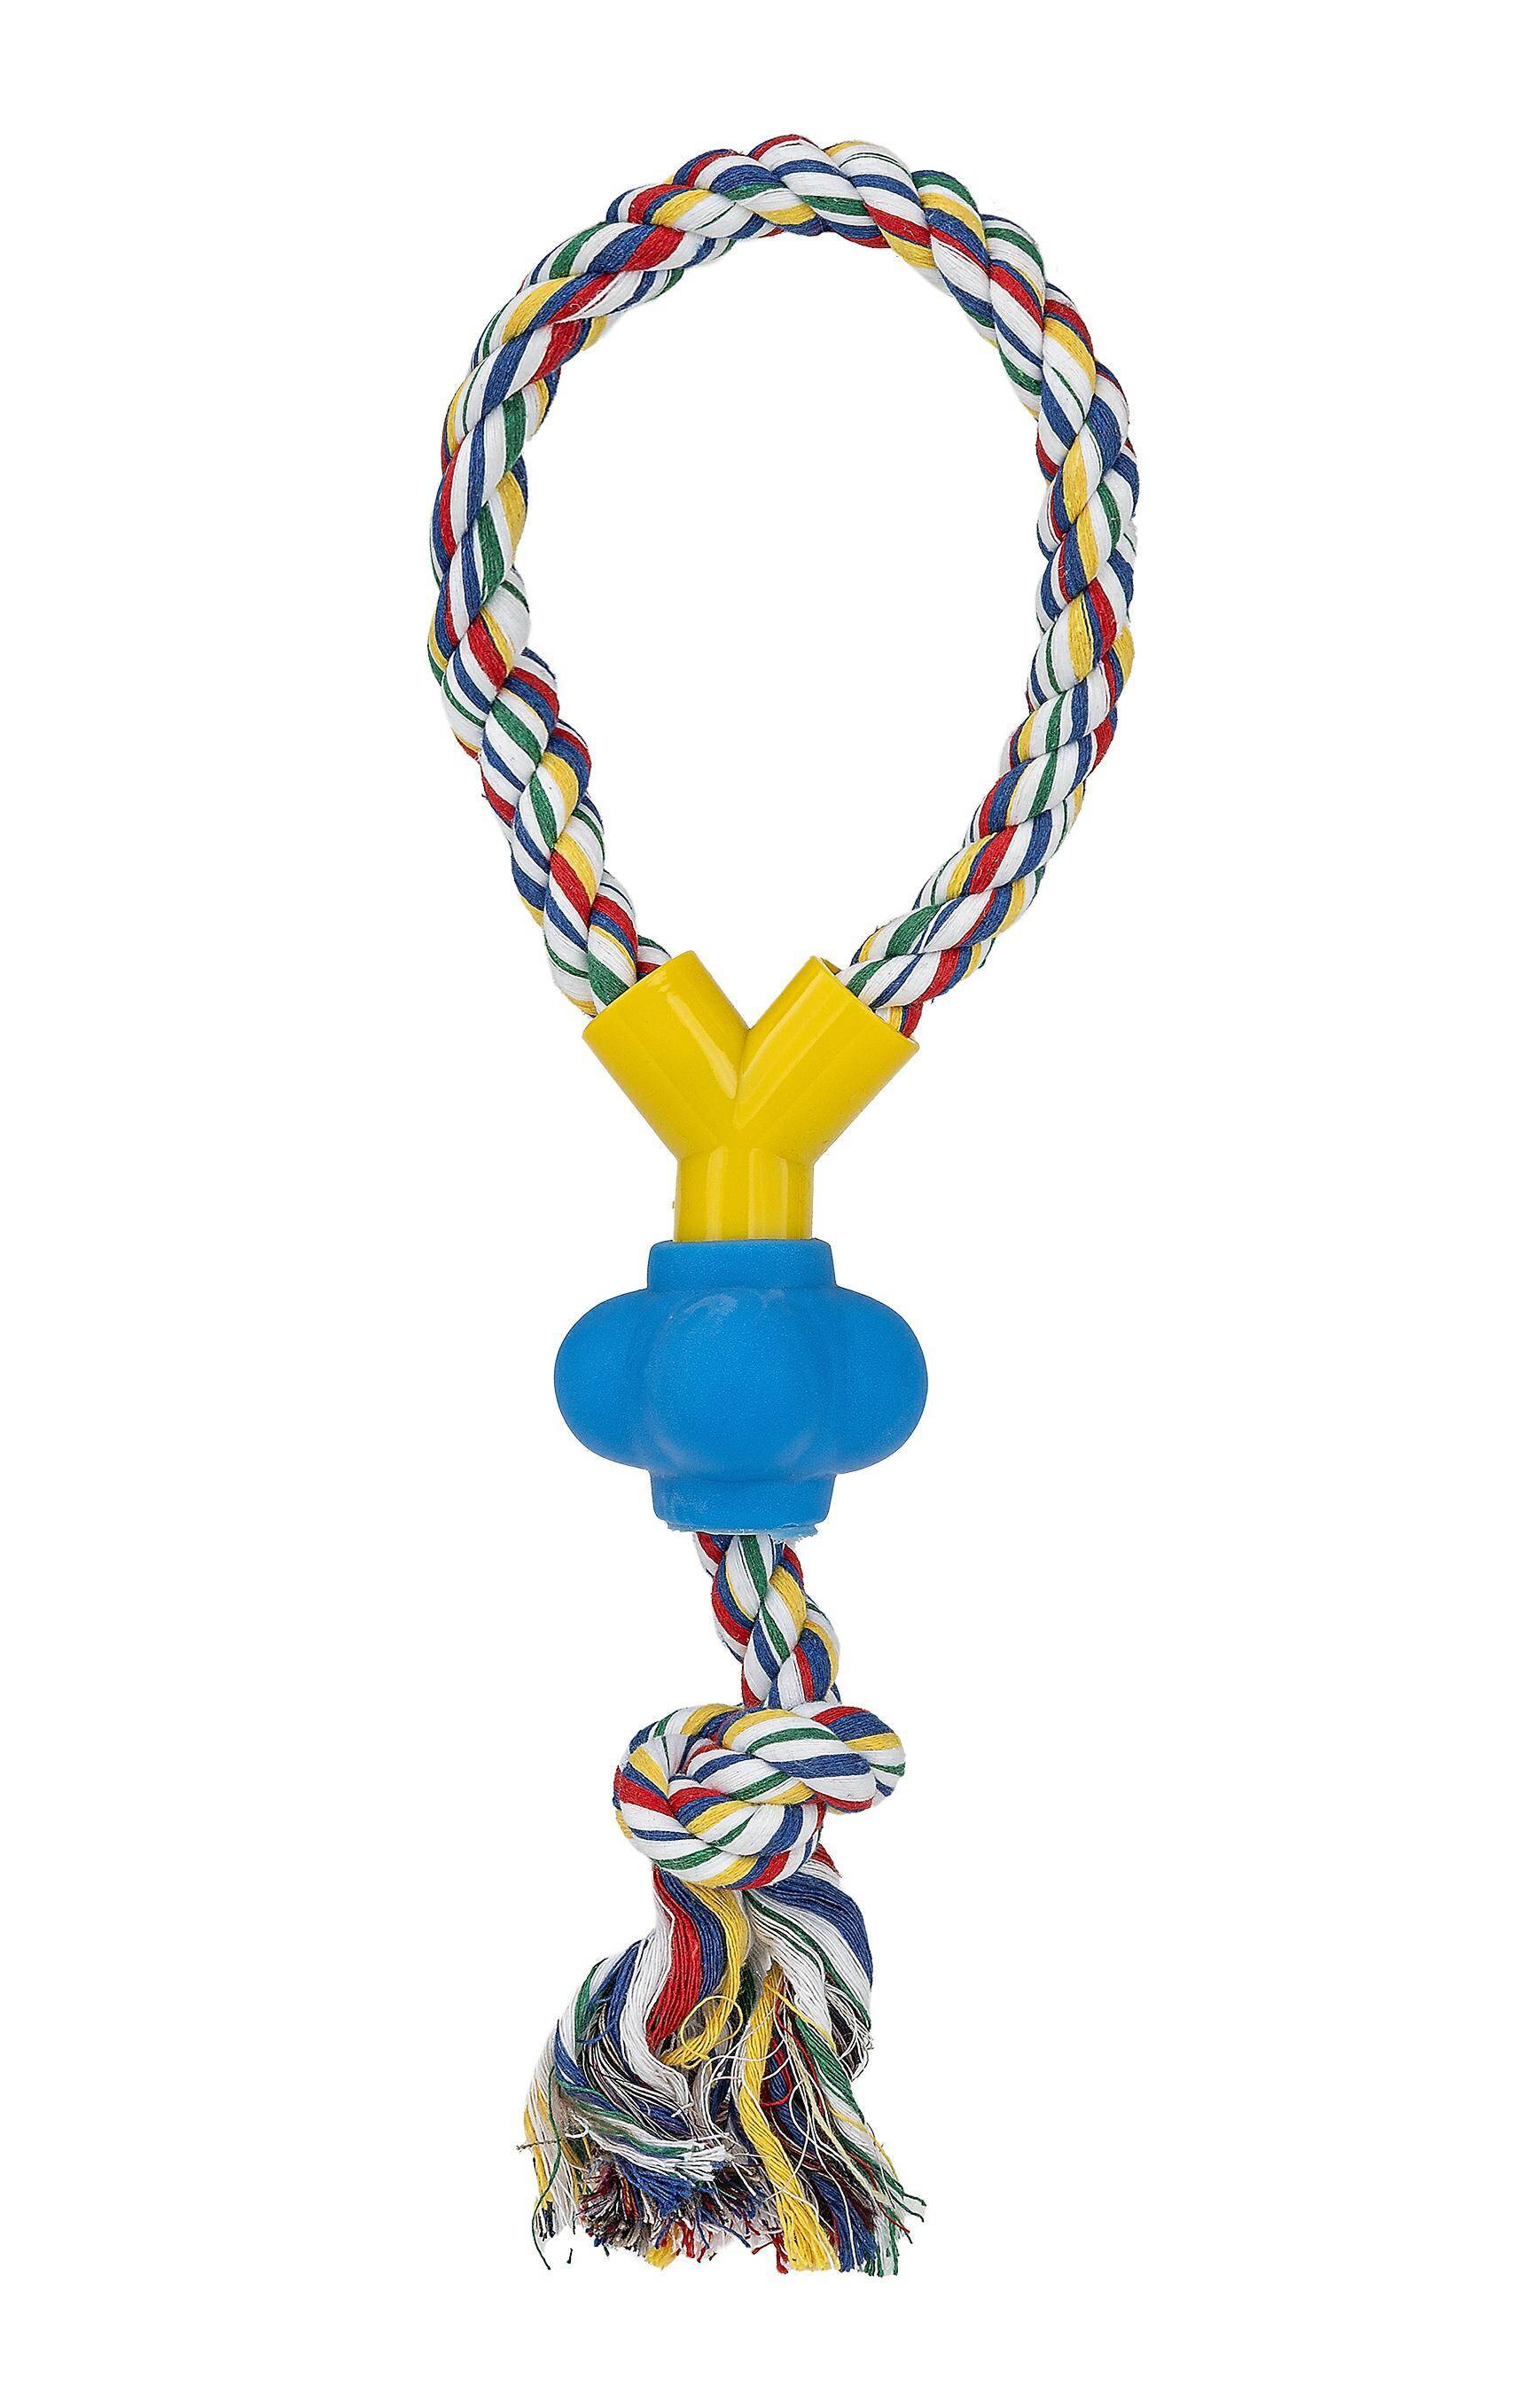 Rope Toy / Loop - Happet Z546 - 32cm